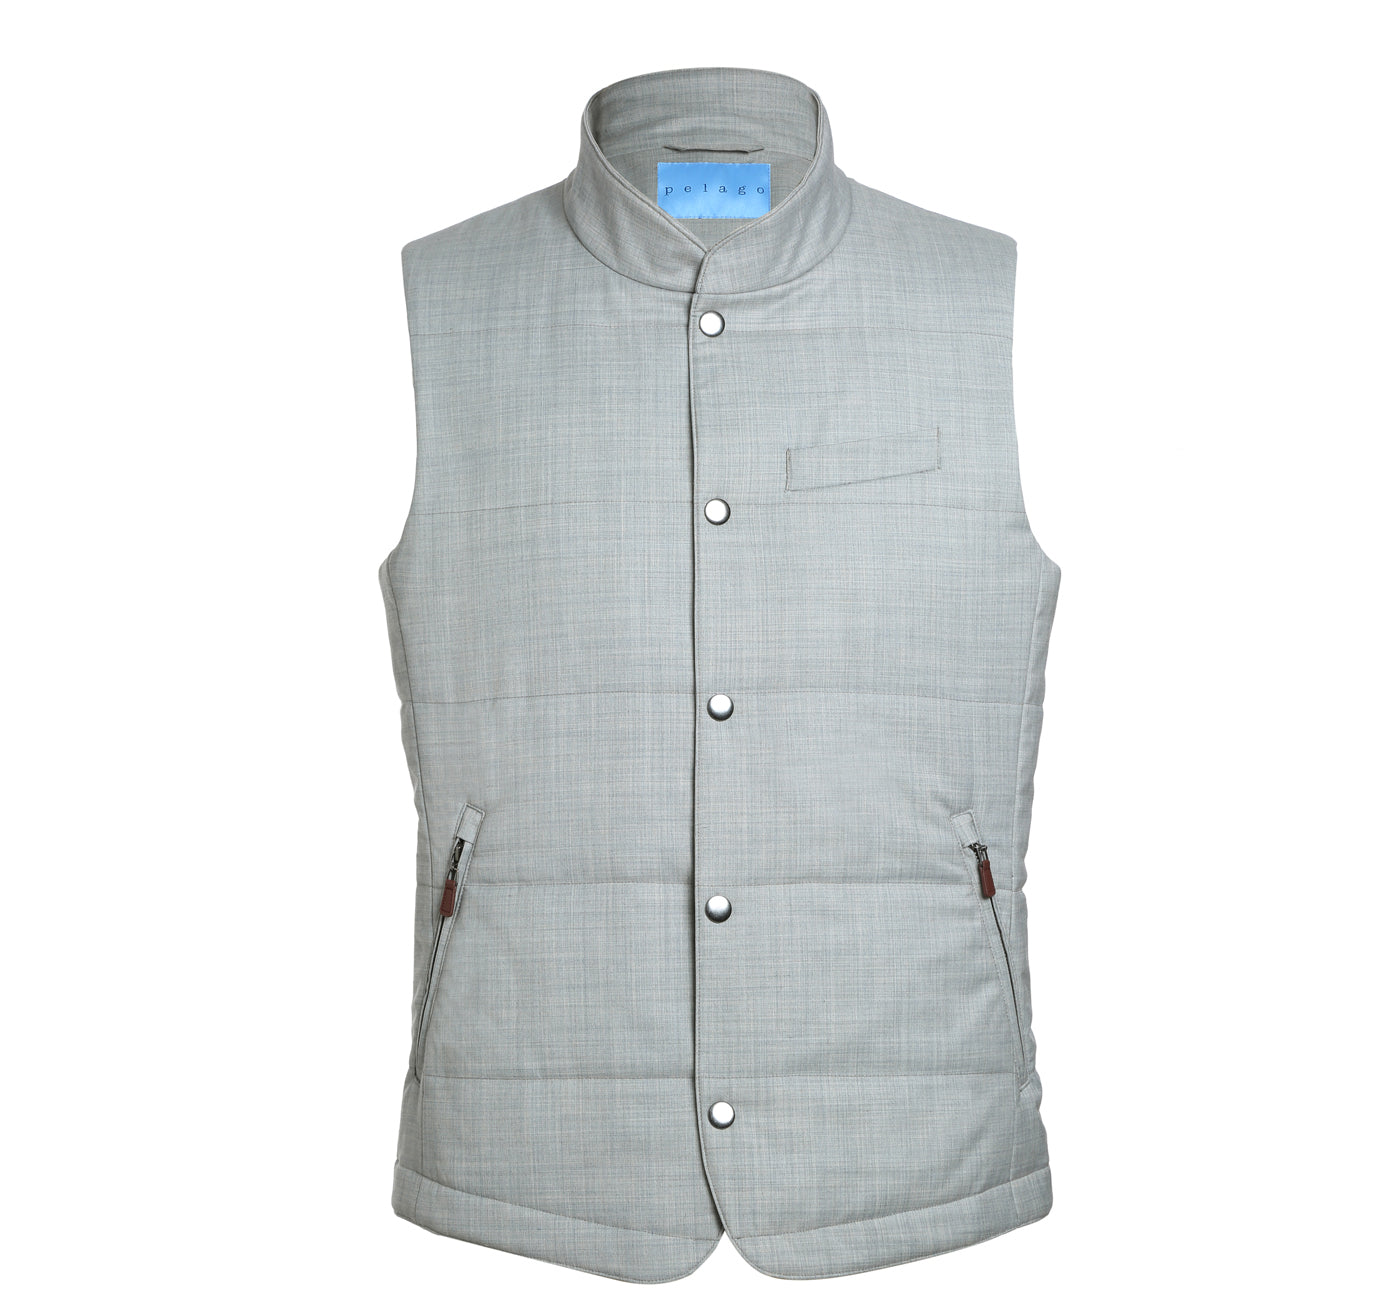 Wool Blend Puffer Vest in Silver Grey by Pelago